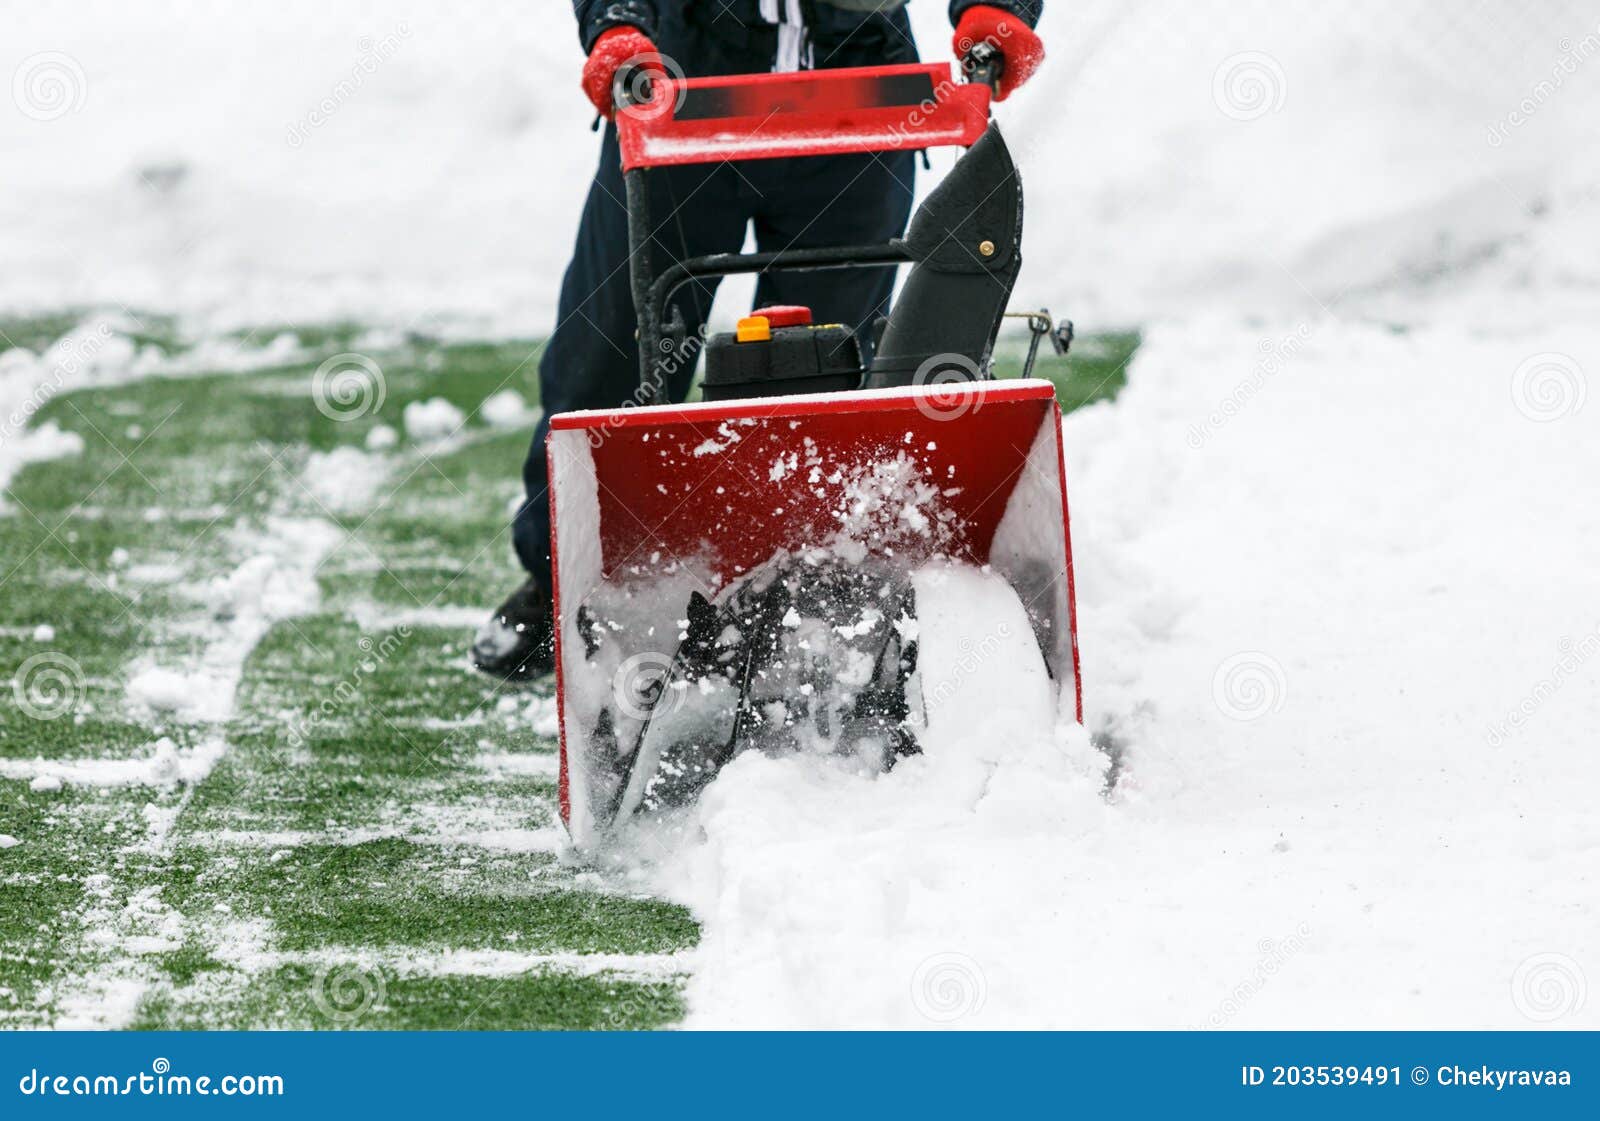 Mann Mithilfe Einer Schneekanone, Um Große Mengen Schnee Auf Dem  Fußballfeld Zu Entfernen. Ein Mann Reinigt Schnee Mit Einer Snowr Stockbild  - Bild von ausrüstung, kalt: 203539491